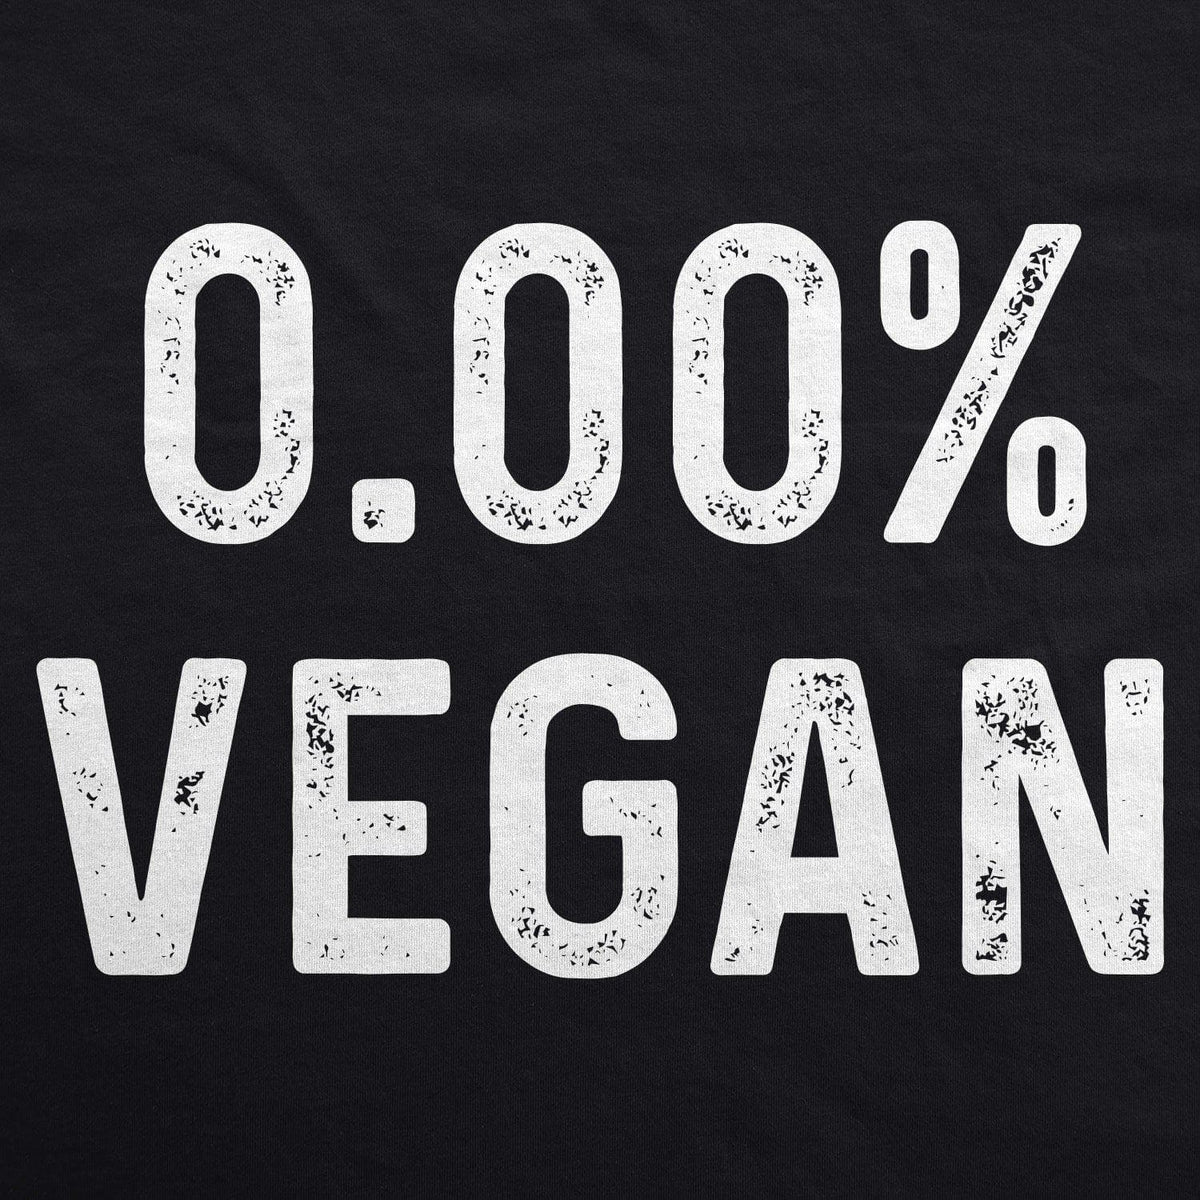 0.00% Vegan Cookout Apron - Crazy Dog T-Shirts